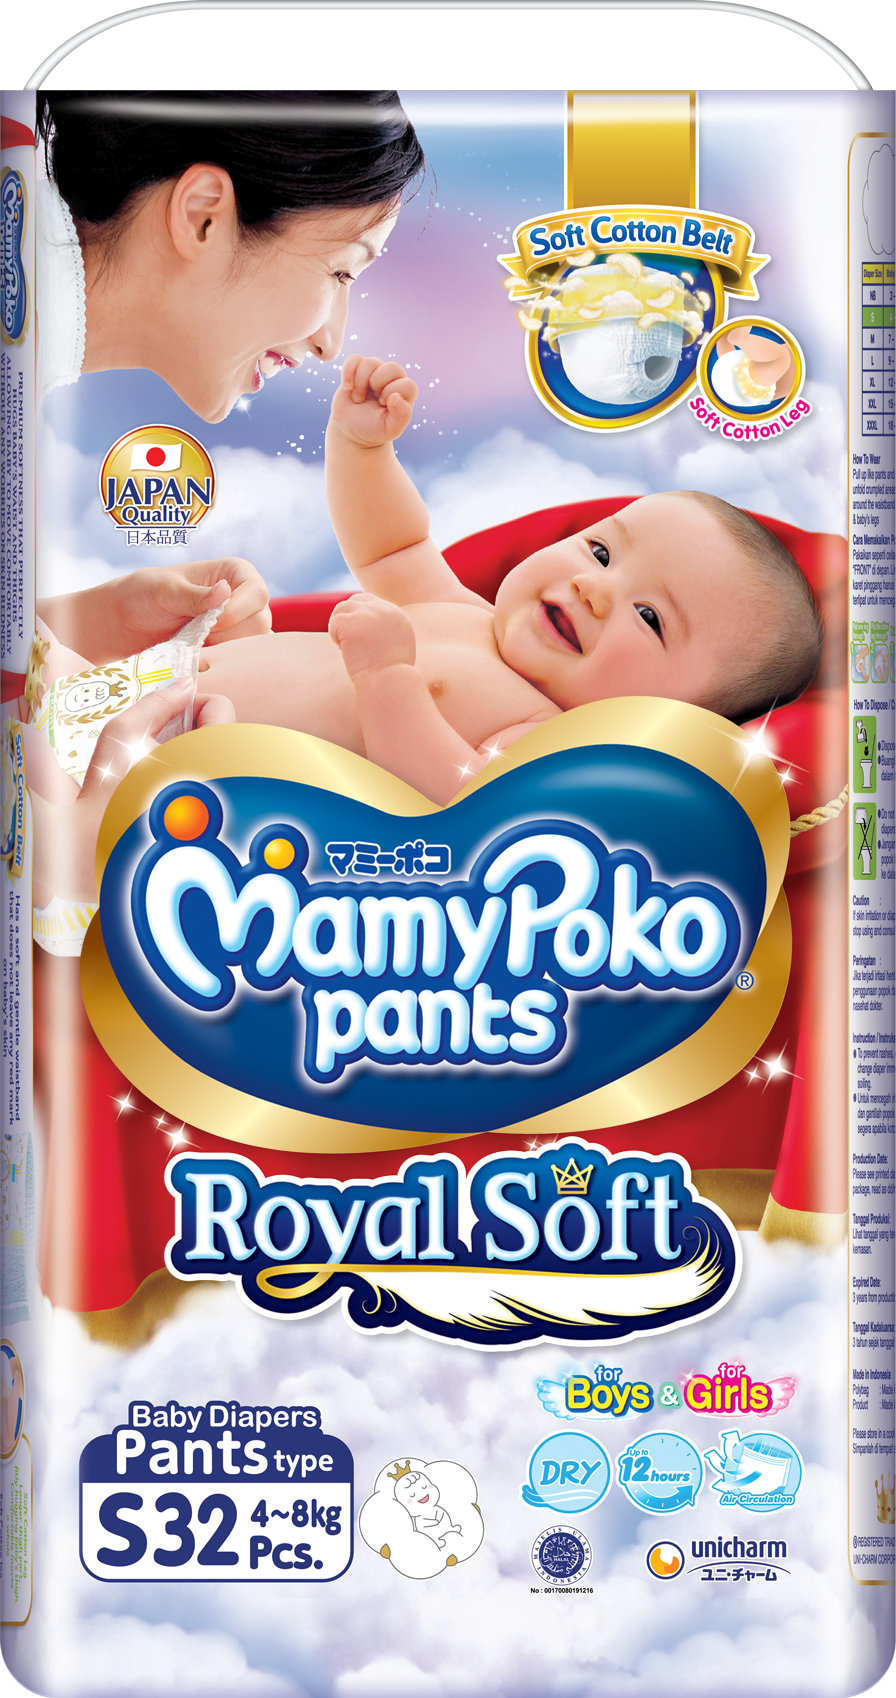 MamyPoko Pants Royal Soft NB